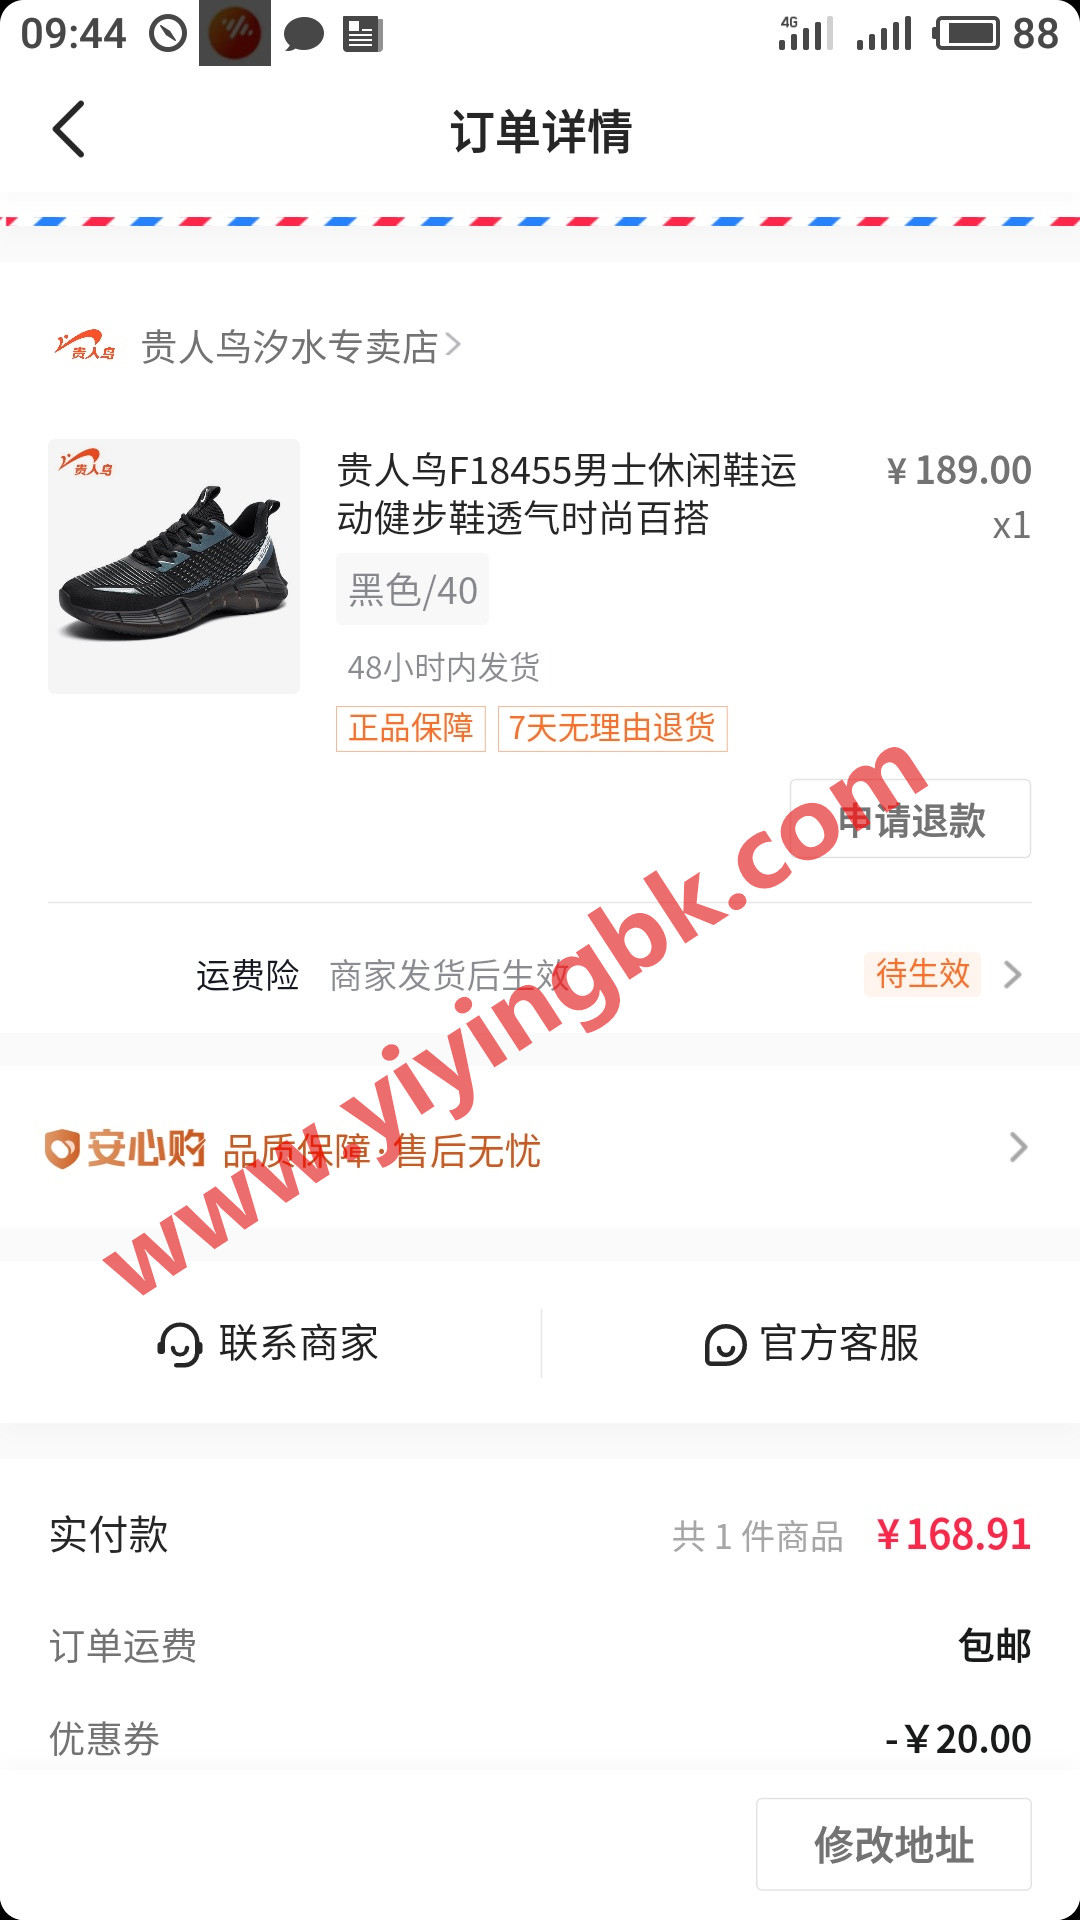 在抖音极速版买的贵人鸟运动鞋，支持一下国产国货。www.yiyingbk.com